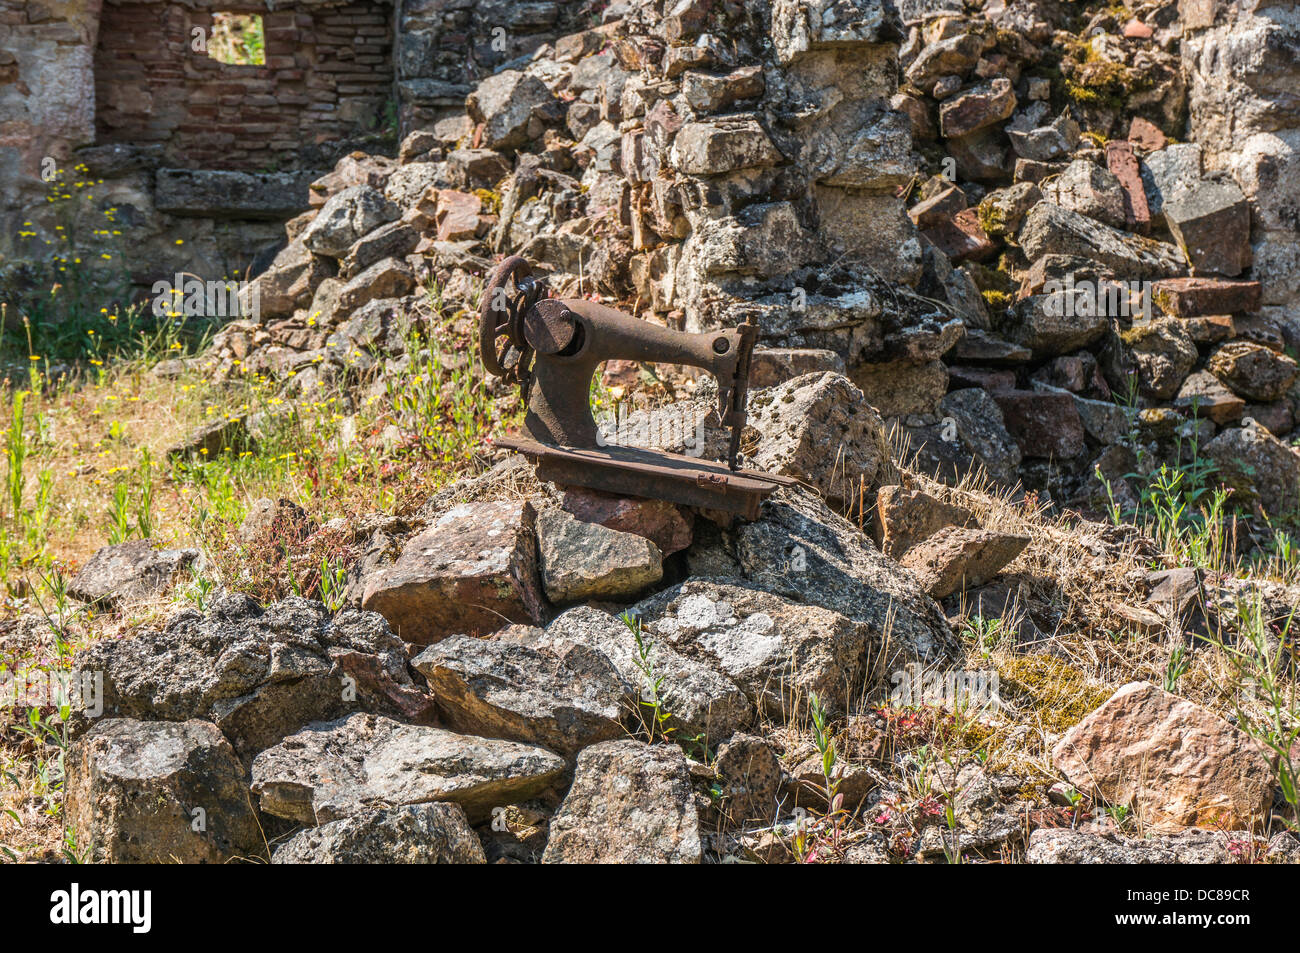 Eine ikonische Bild - Das verrostete Nähmaschine, in die Ruinen von Oradour-sur-Glane, Krieg, Massaker, Dordogne, Limousin Frankreich. Stockfoto